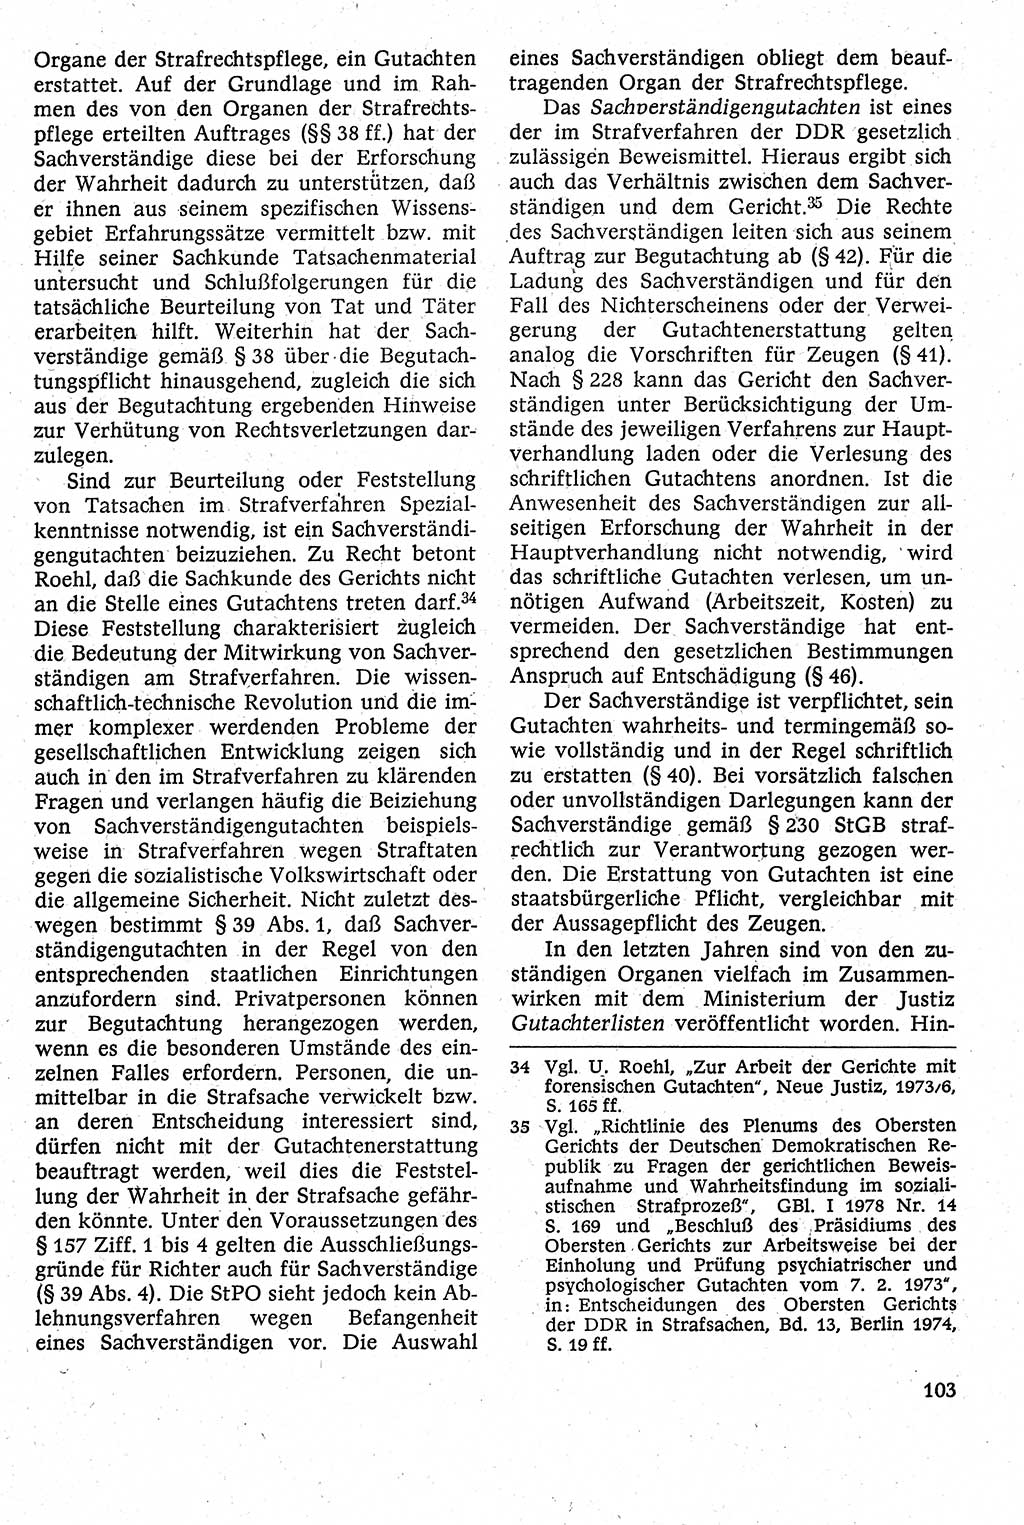 Strafverfahrensrecht [Deutsche Demokratische Republik (DDR)], Lehrbuch 1982, Seite 103 (Strafverf.-R. DDR Lb. 1982, S. 103)